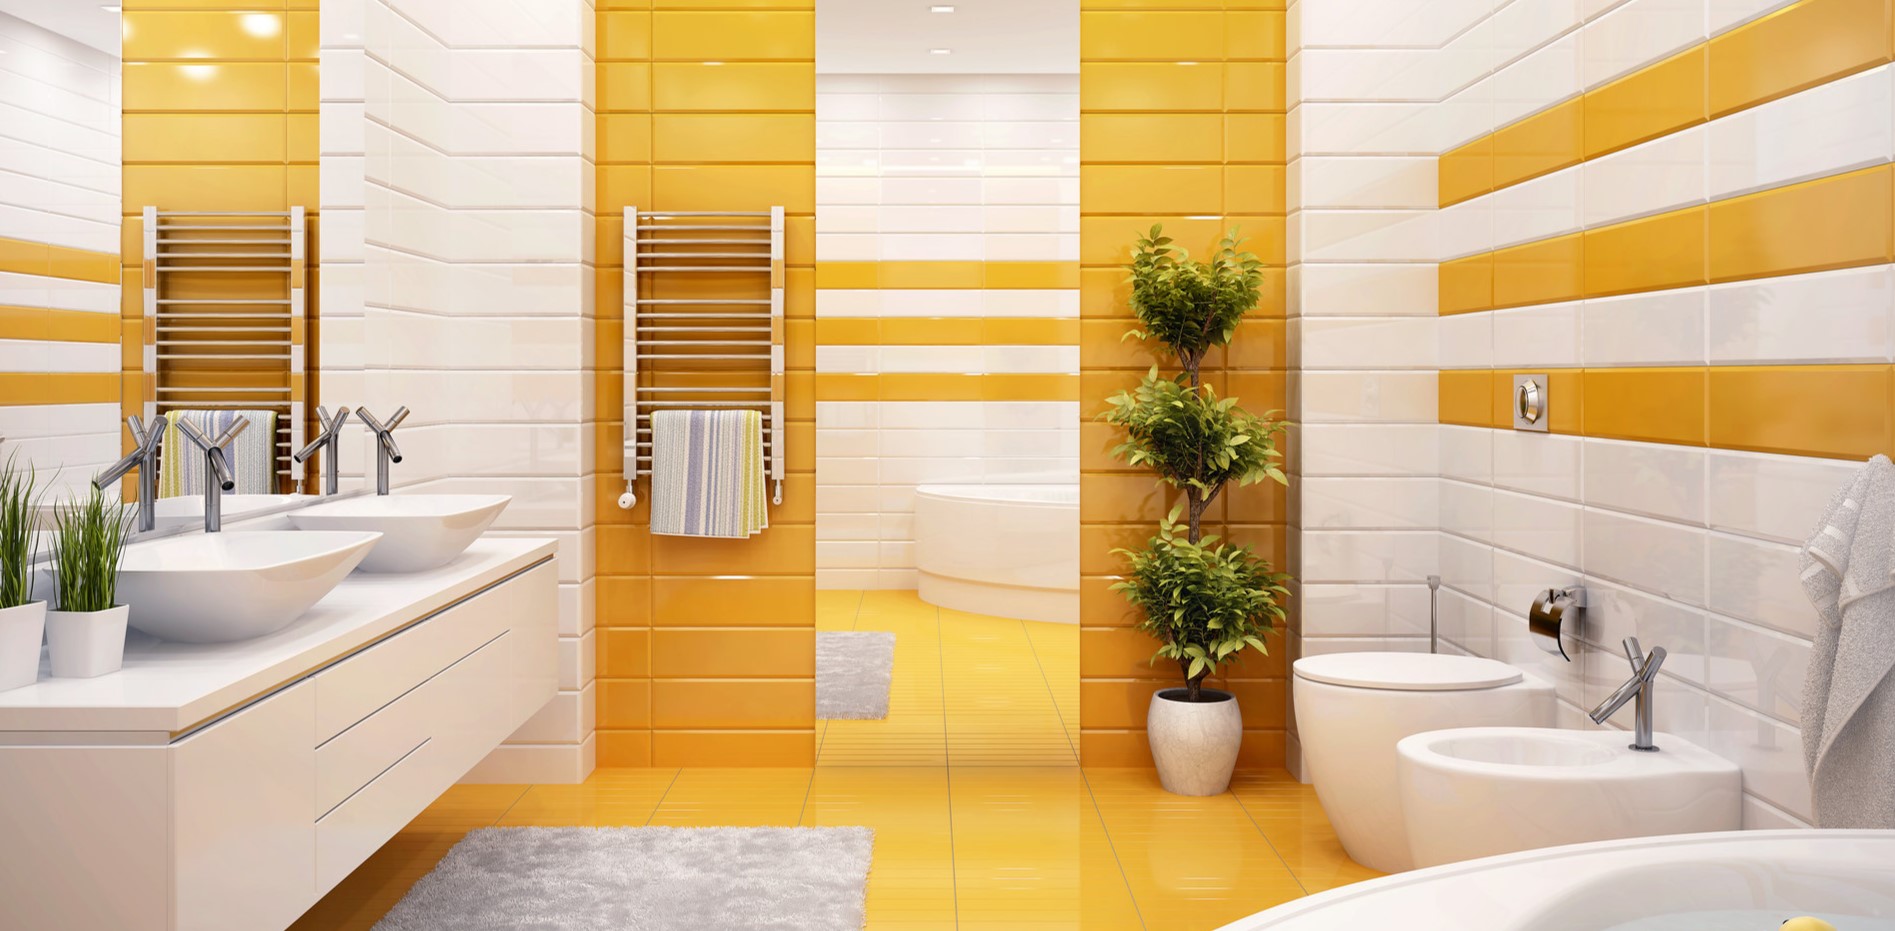 Желтый оттенок в оформлении интерьера ванной